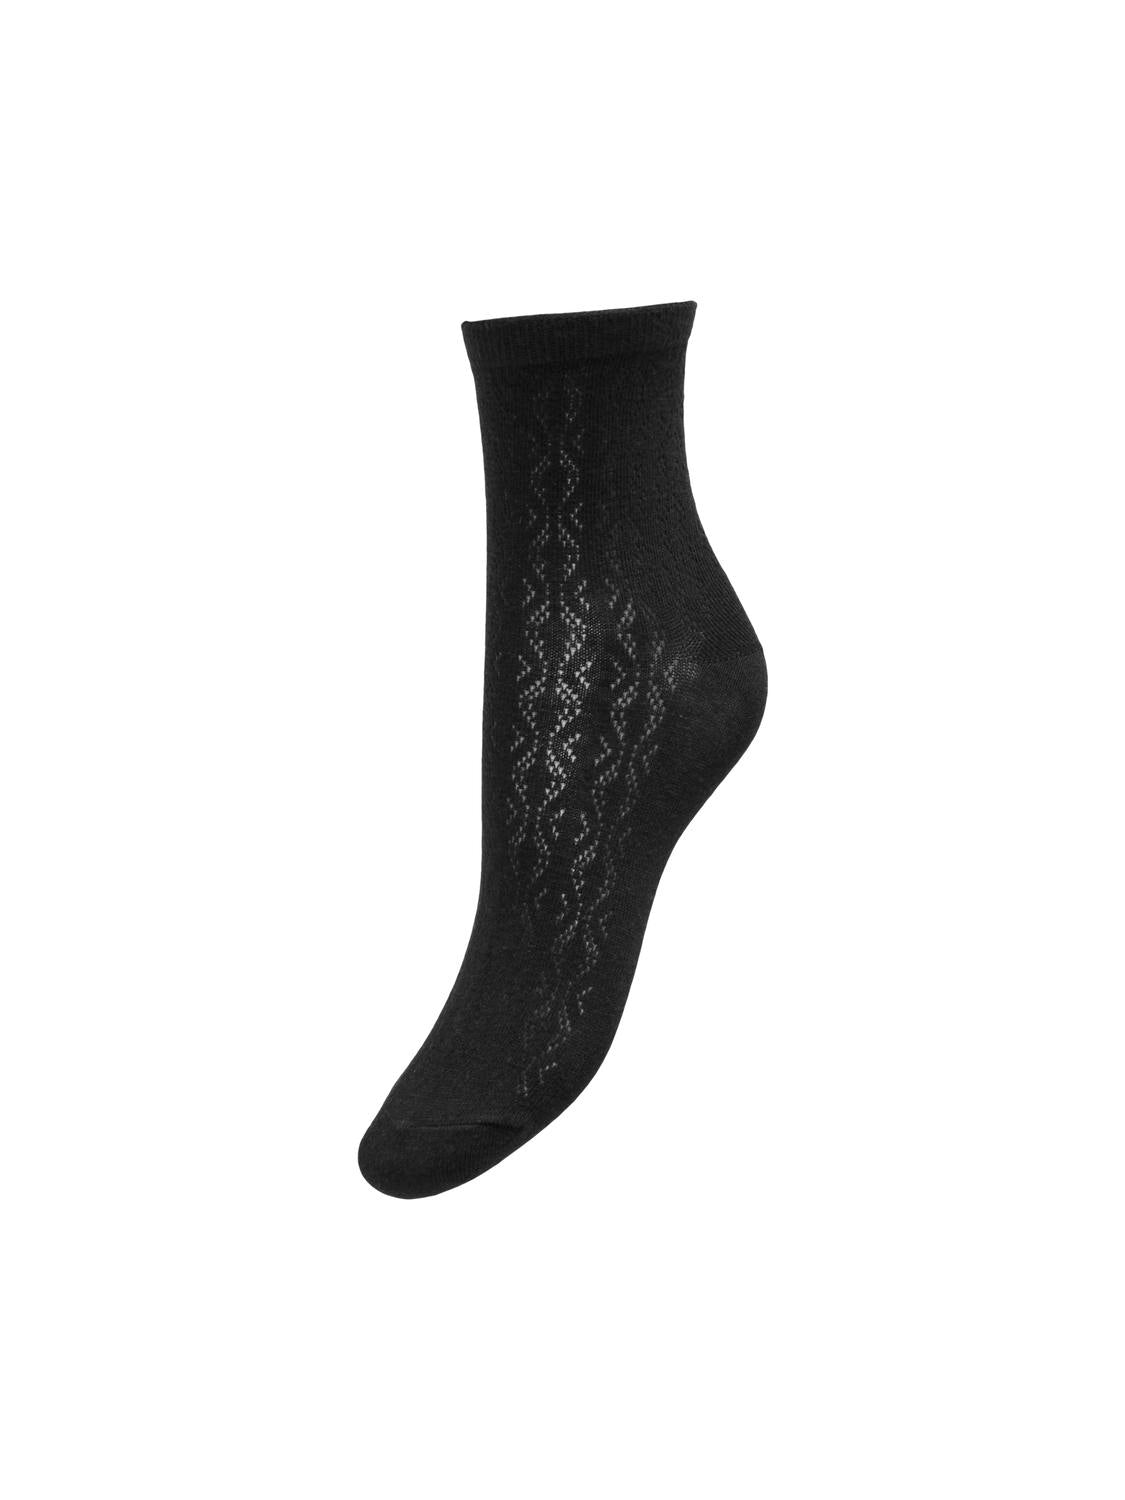 PGNEEDLE Socks - Black